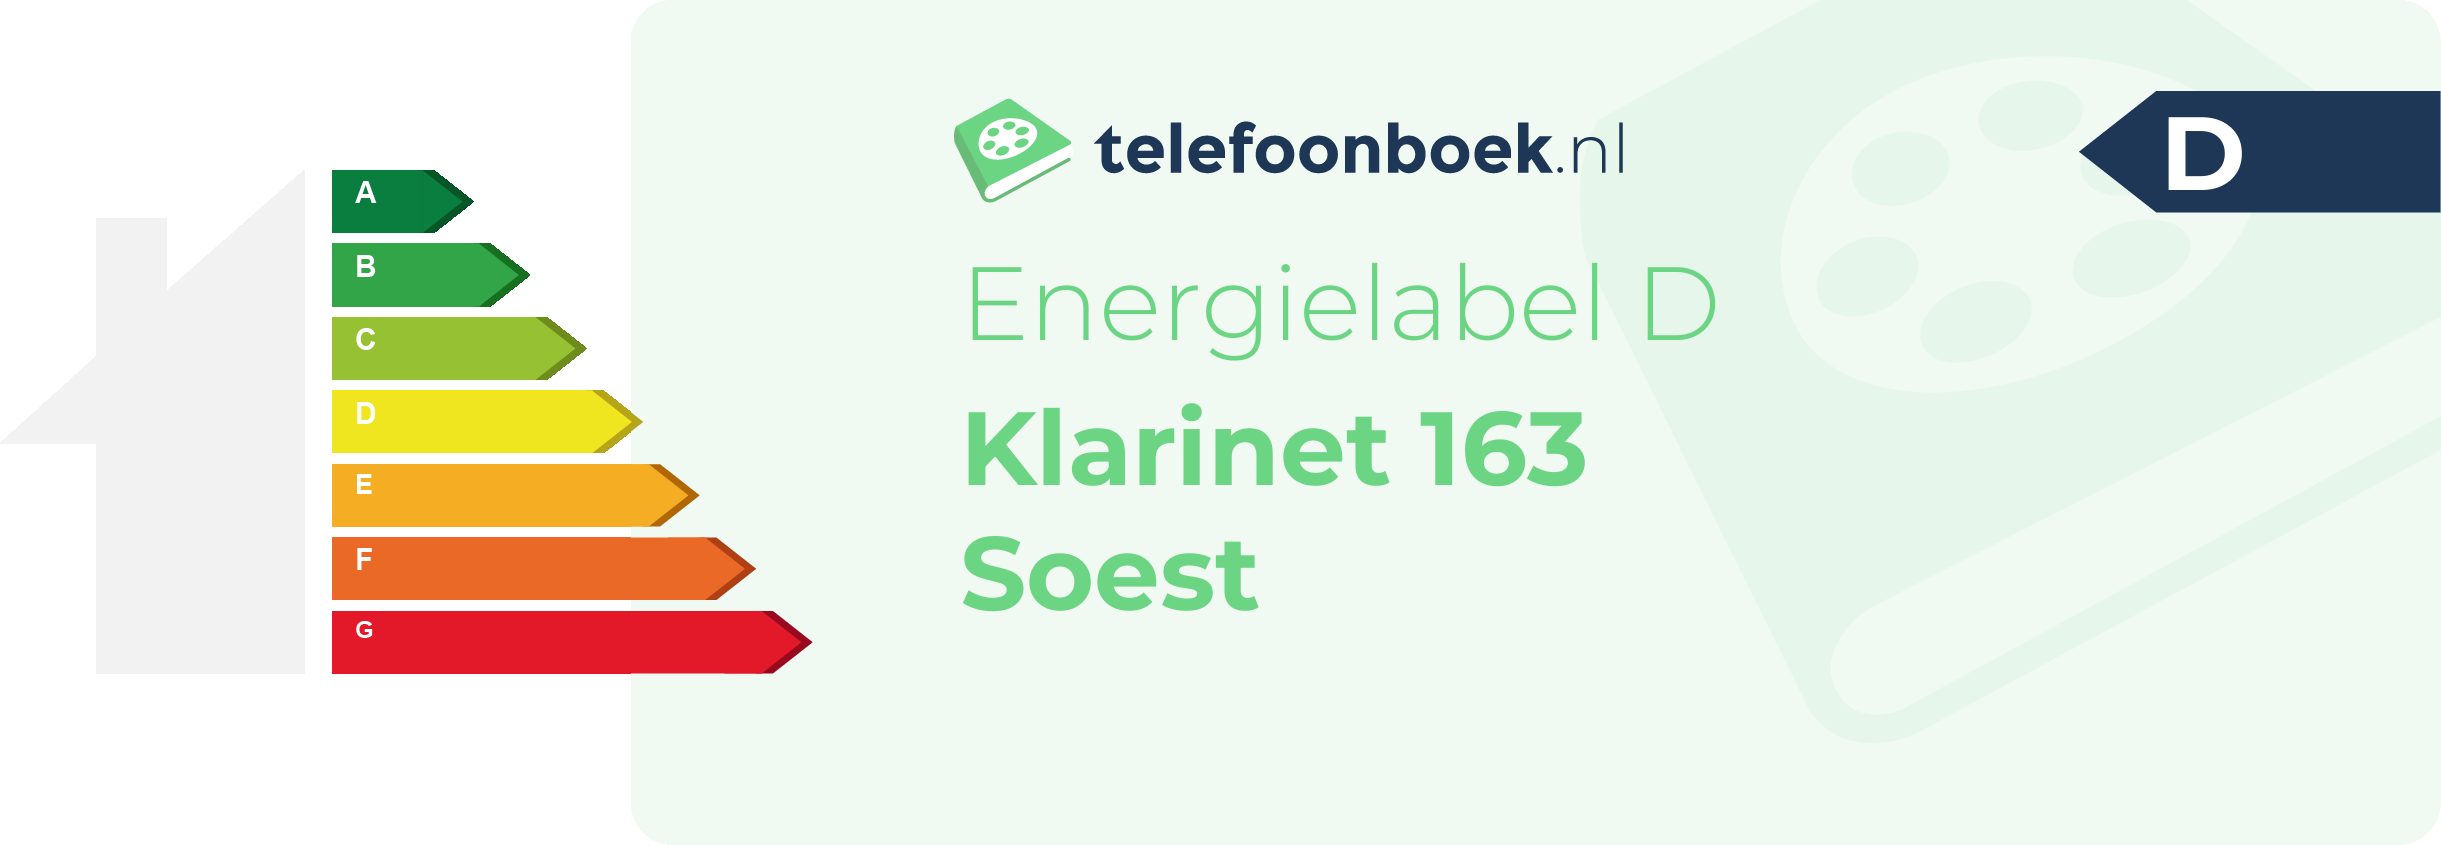 Energielabel Klarinet 163 Soest